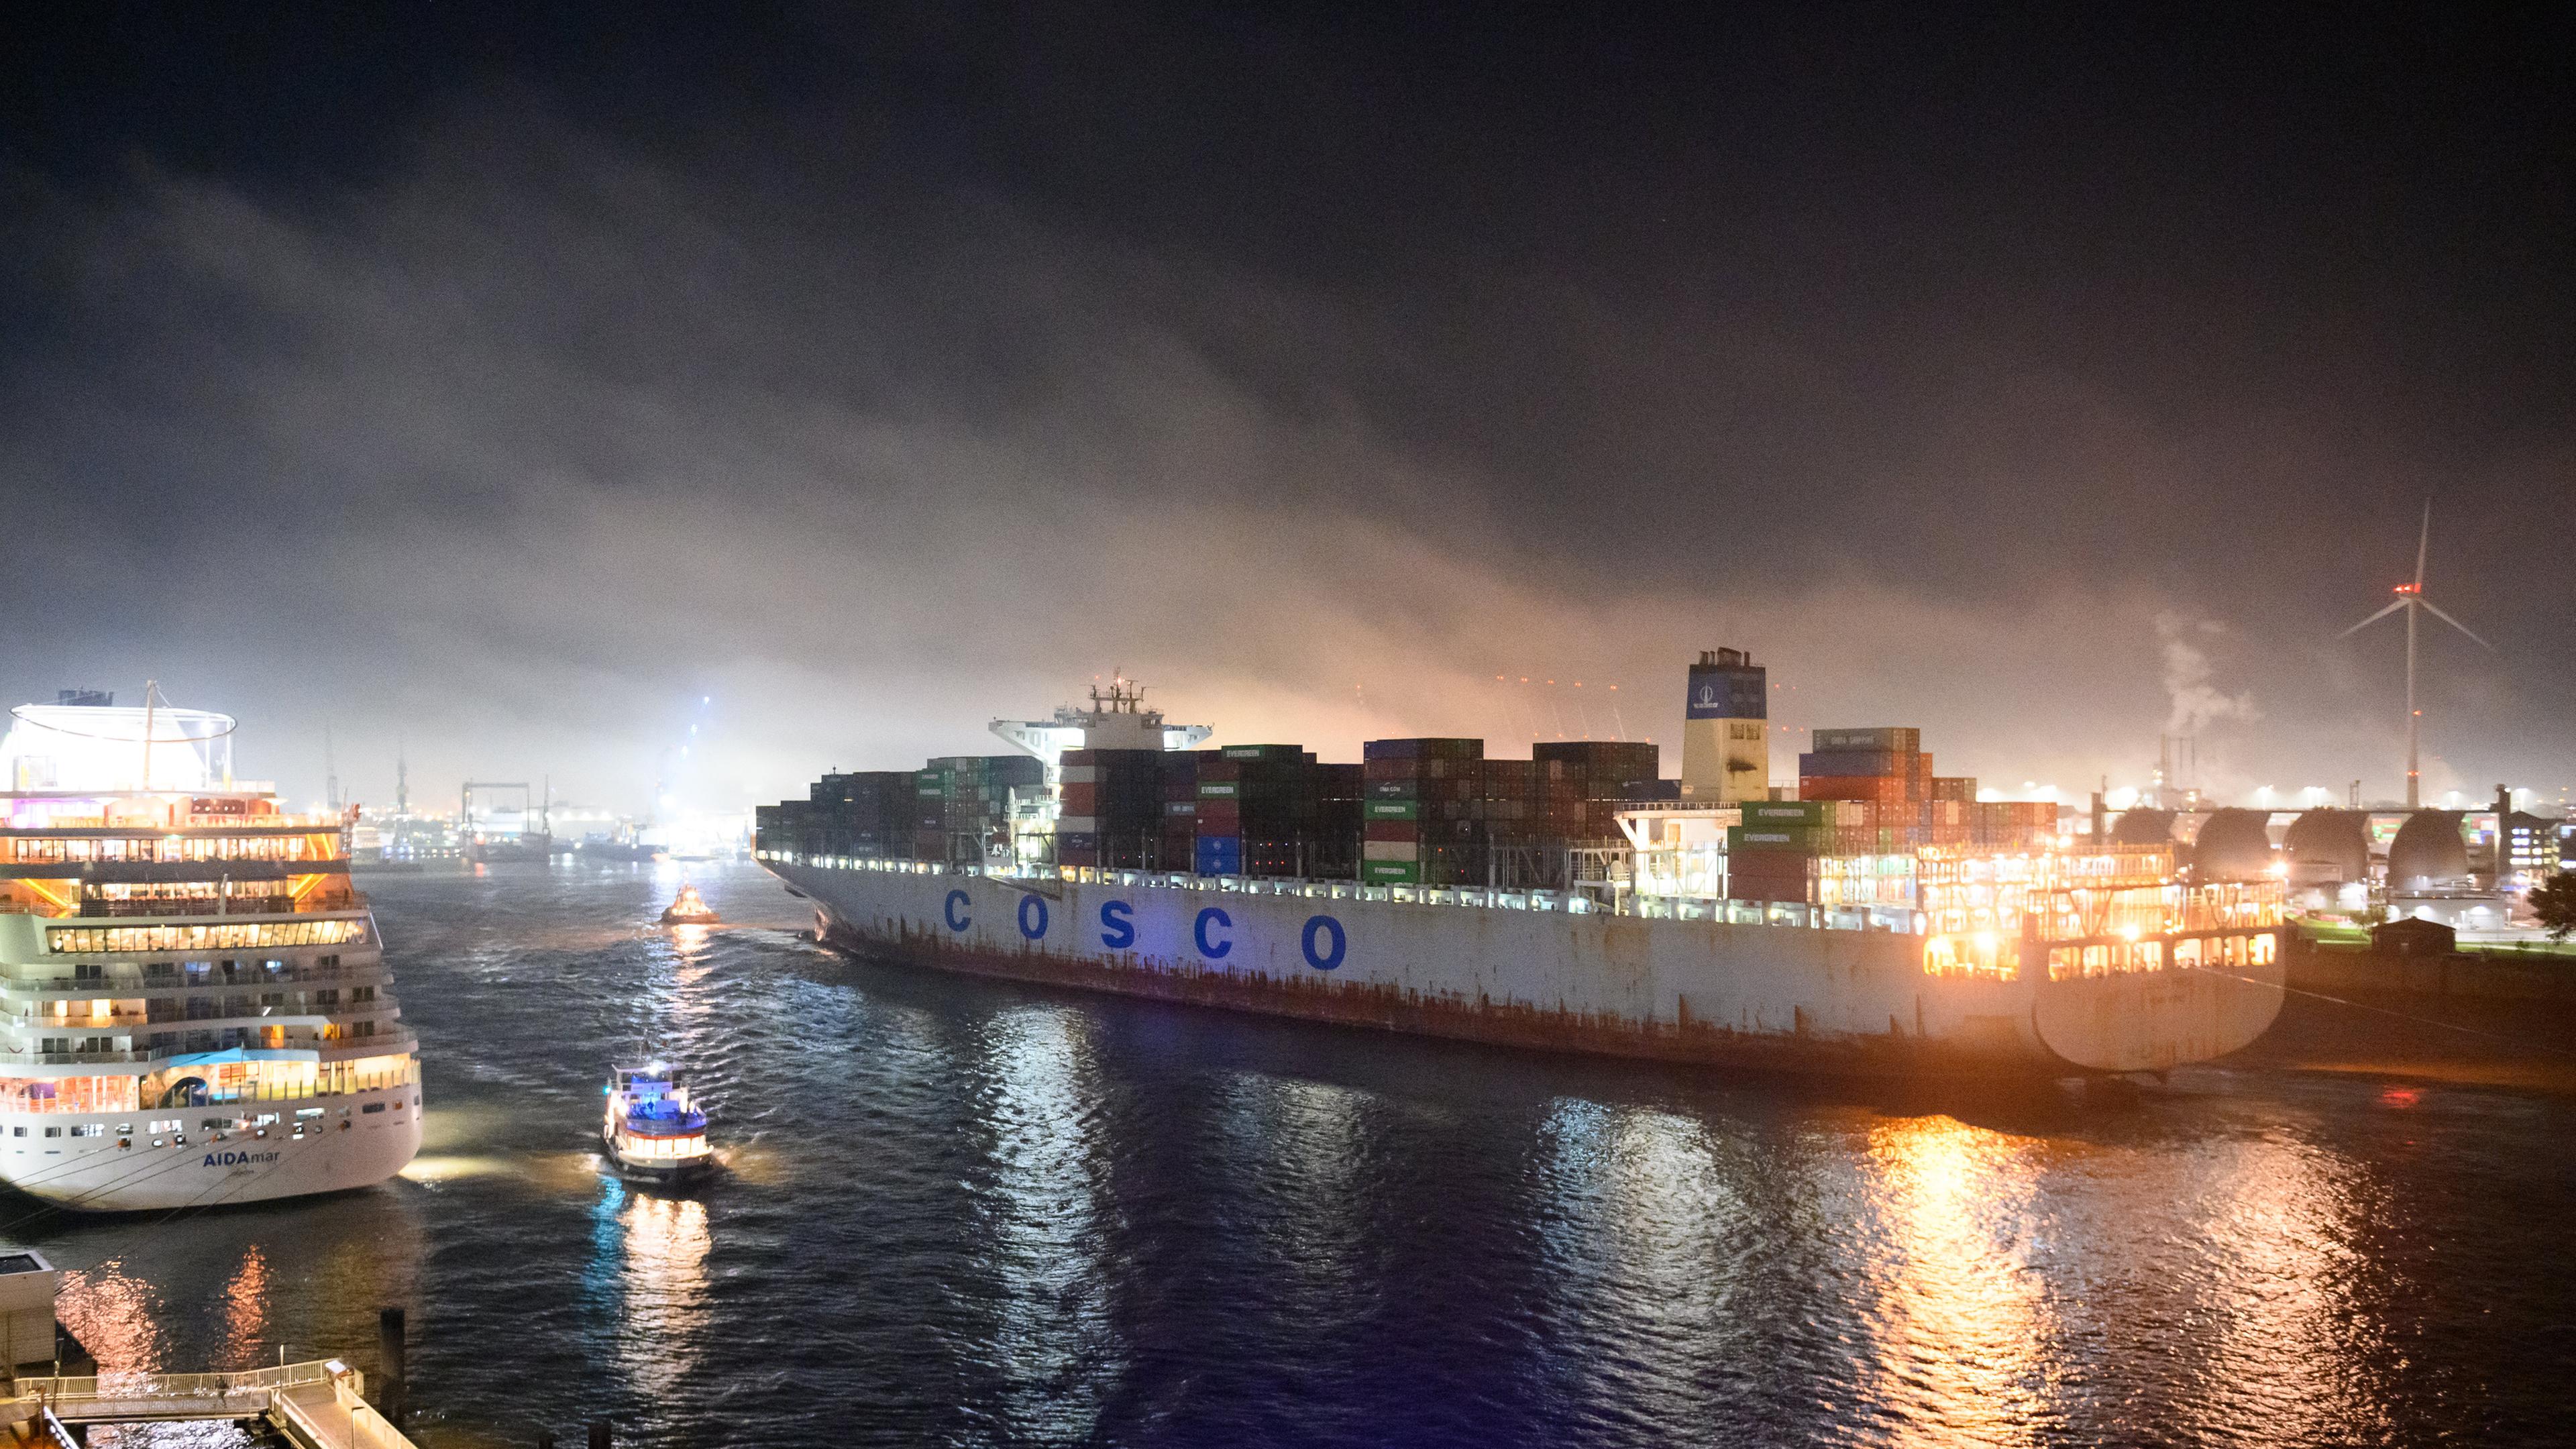 Der Hamburger Hafen bei Nacht. Ein Schiff mit dem Aufdruck "Cosco" läuft in den Hafen ein.